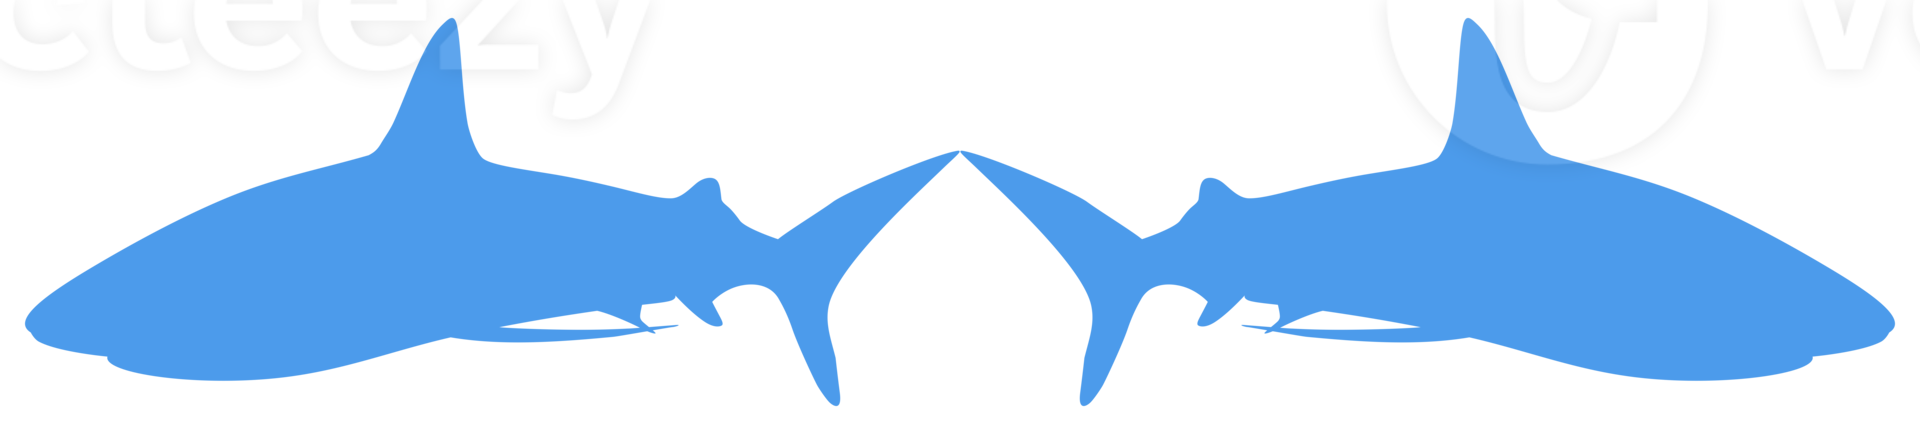 haai silhouet voor logo, pictogram, website, kunst illustratie, infografisch, of grafisch ontwerp element. formaat PNG